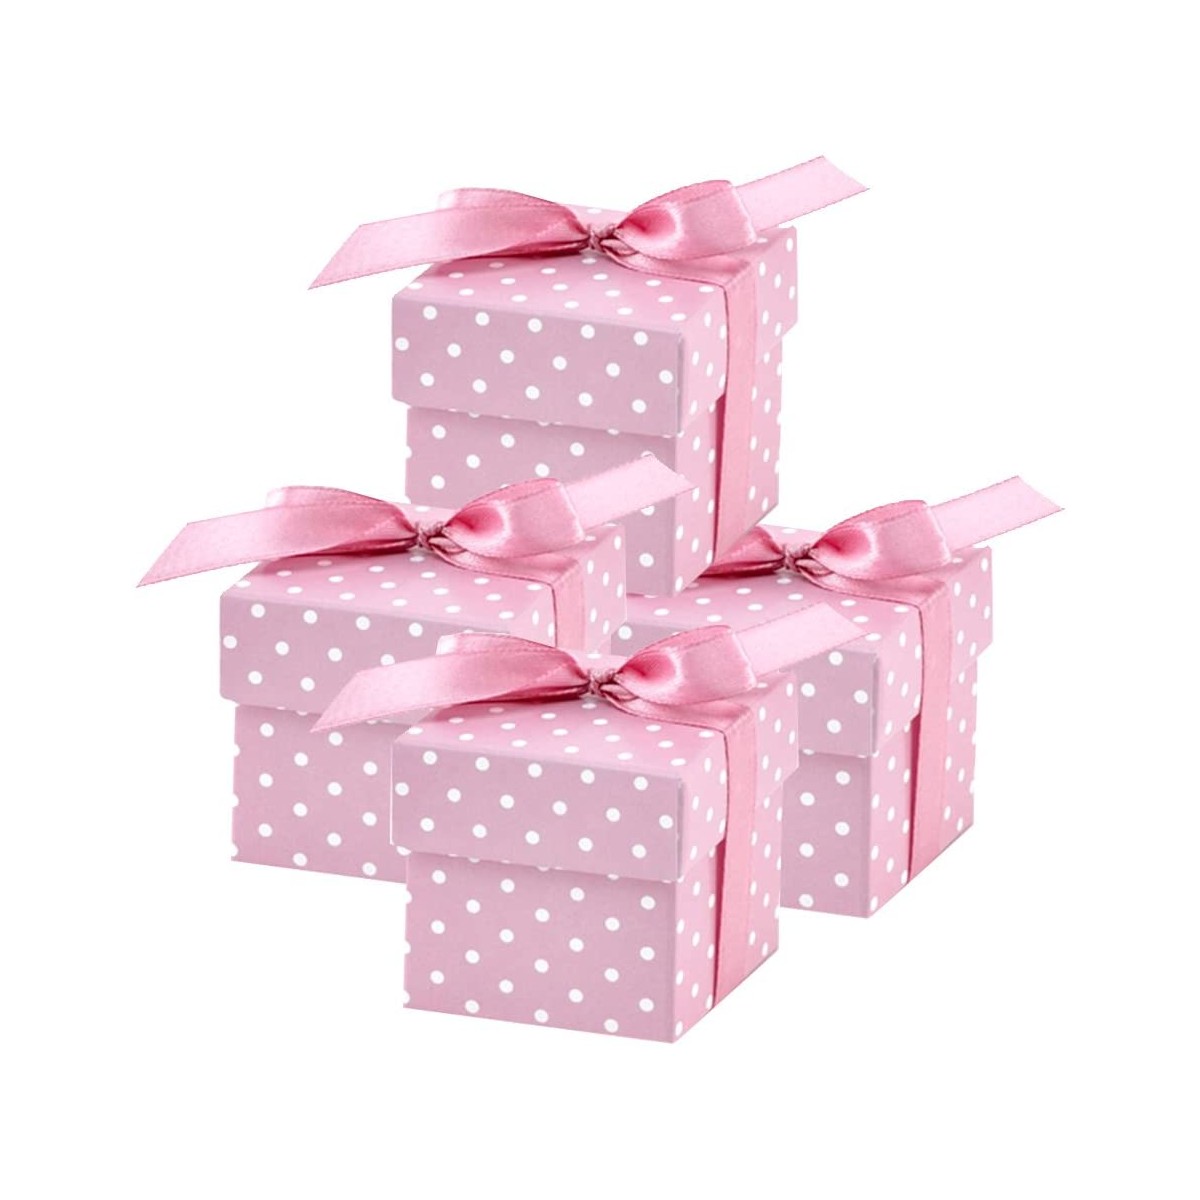 Set con 50 scatoline bomboniere rosa a pois, per nascita o battesimo